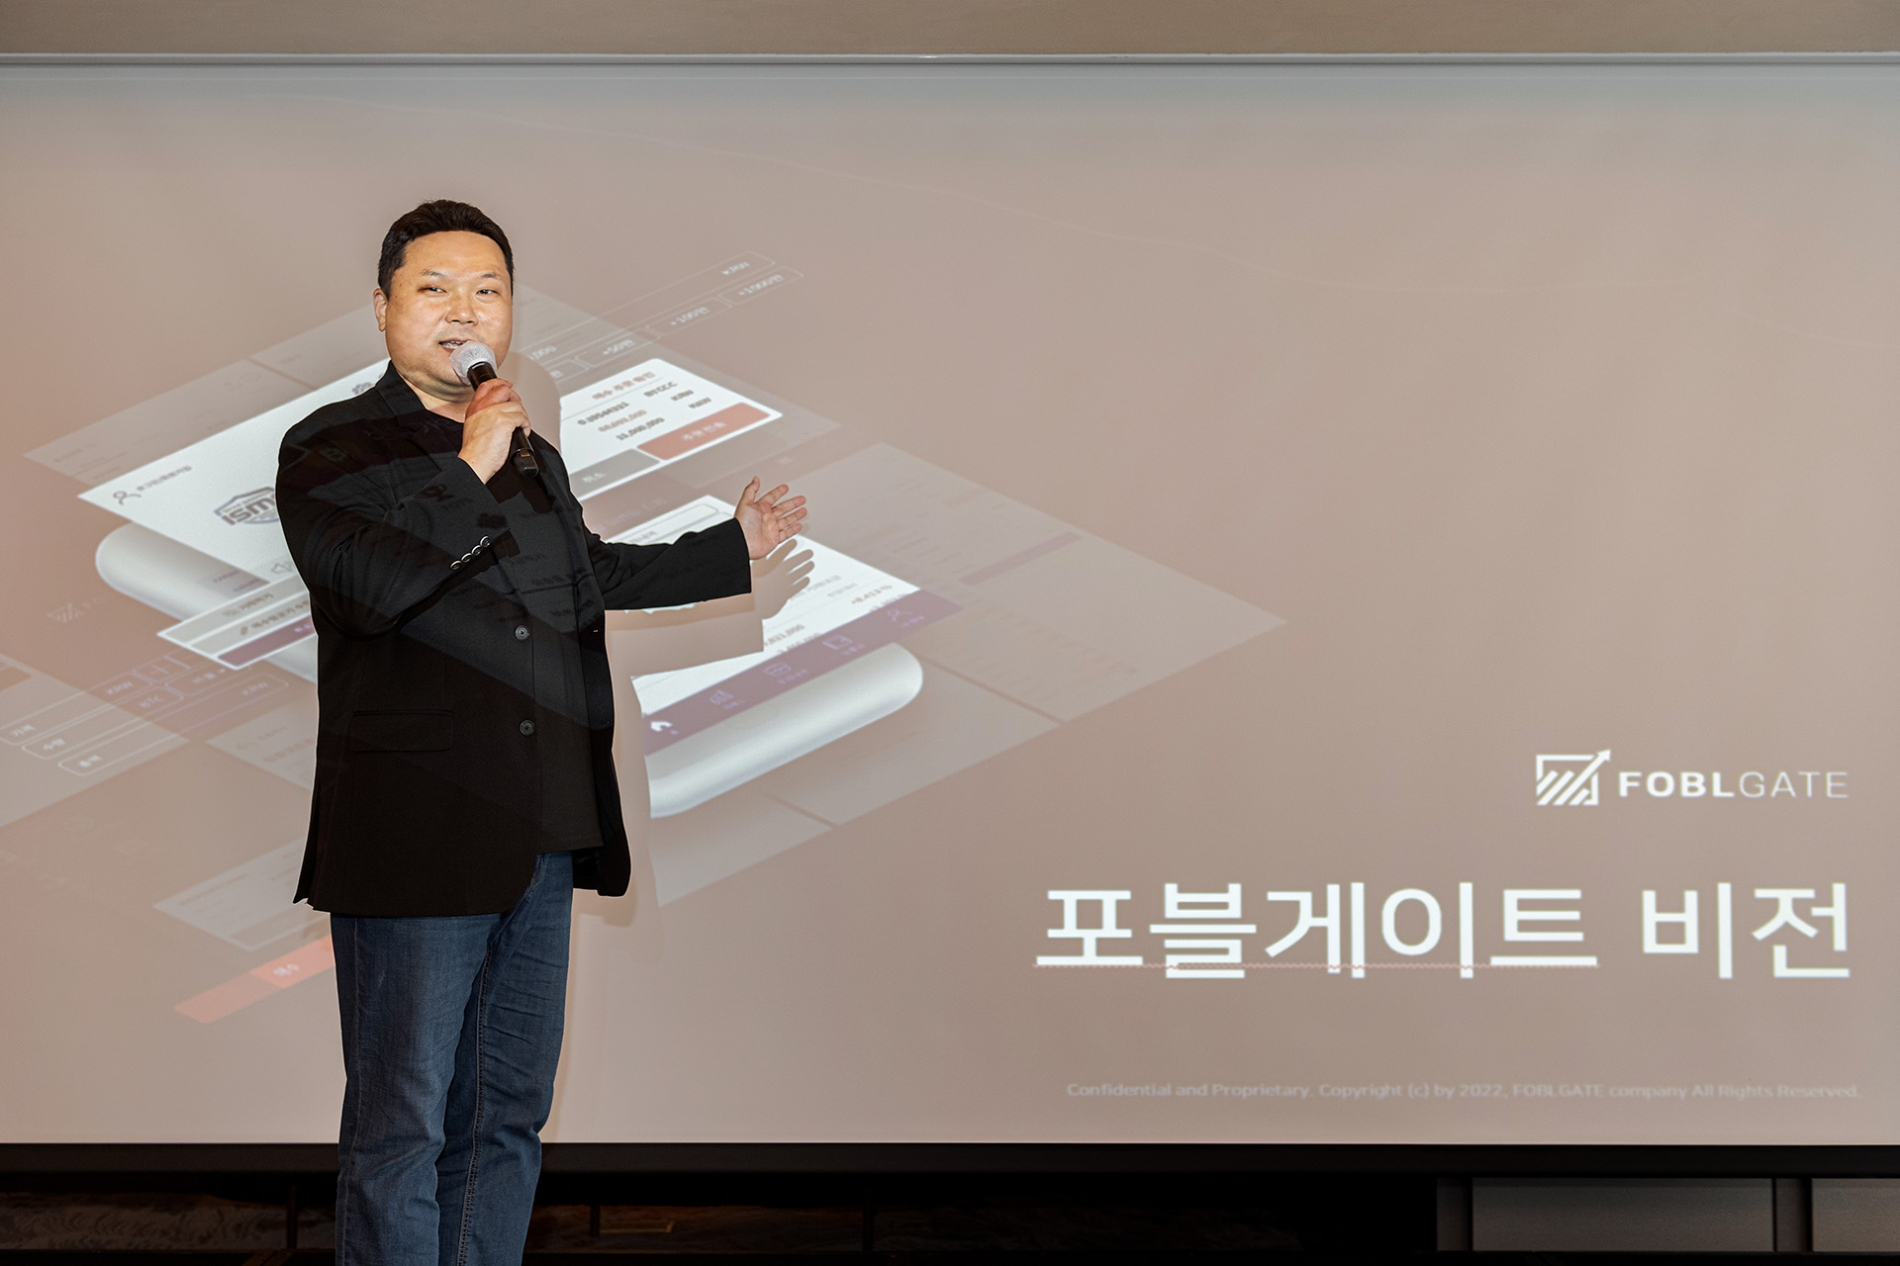 포블게이트, ‘비전 2025’ 선포식 개최